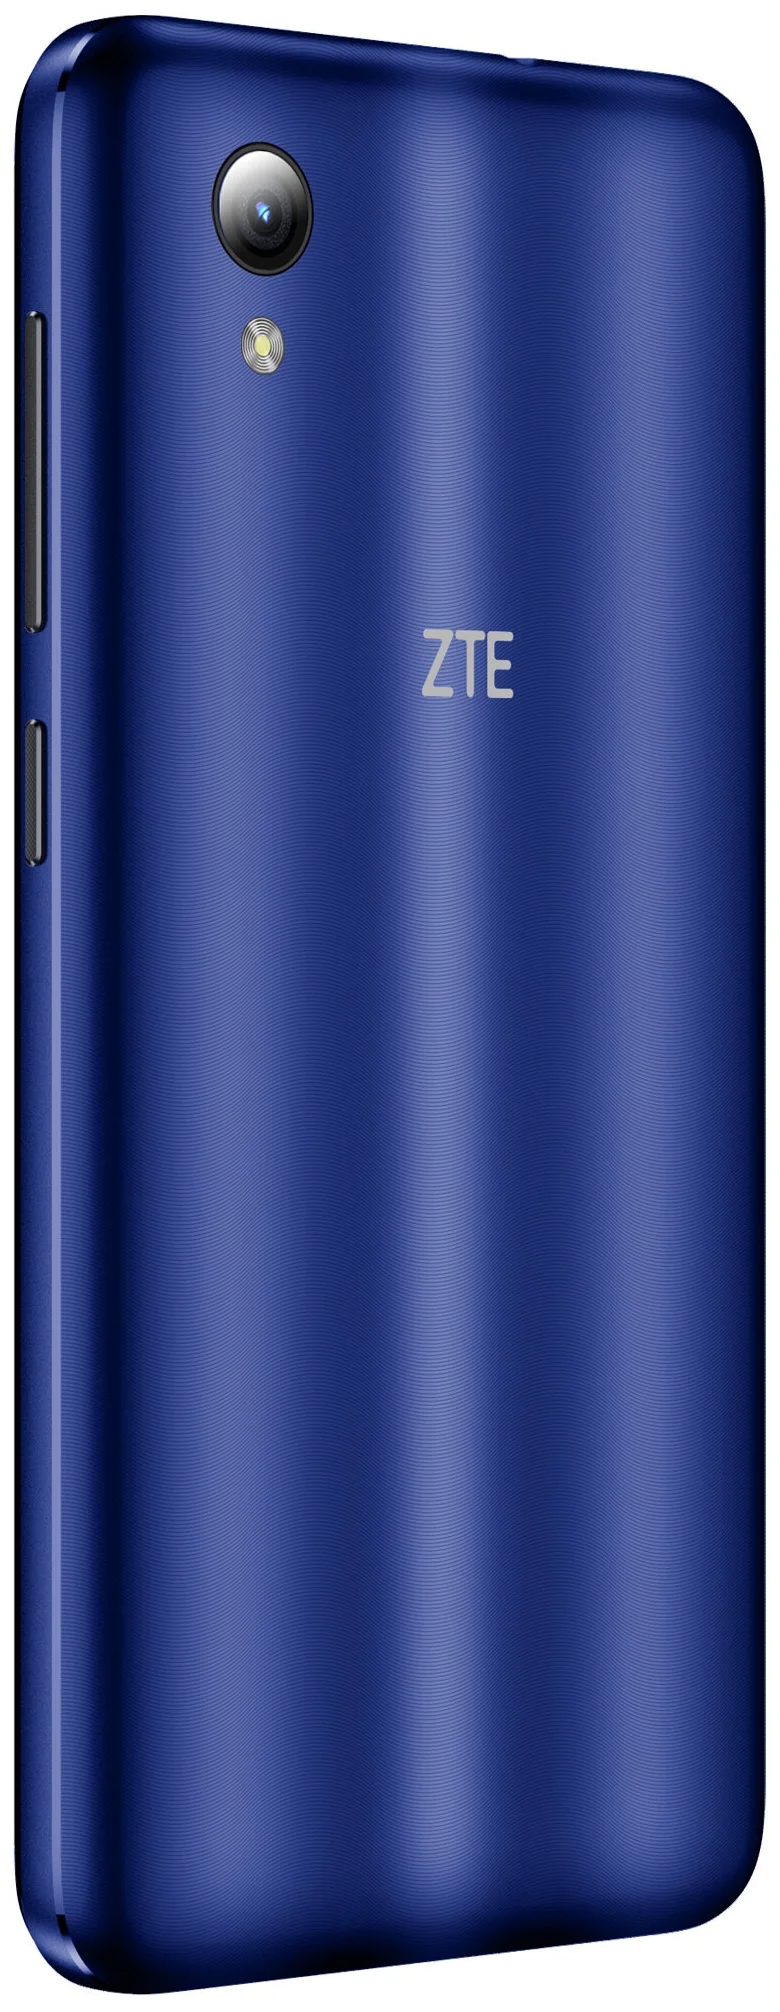 ZTE Blade A3 (2019) - интернет: 4G LTE